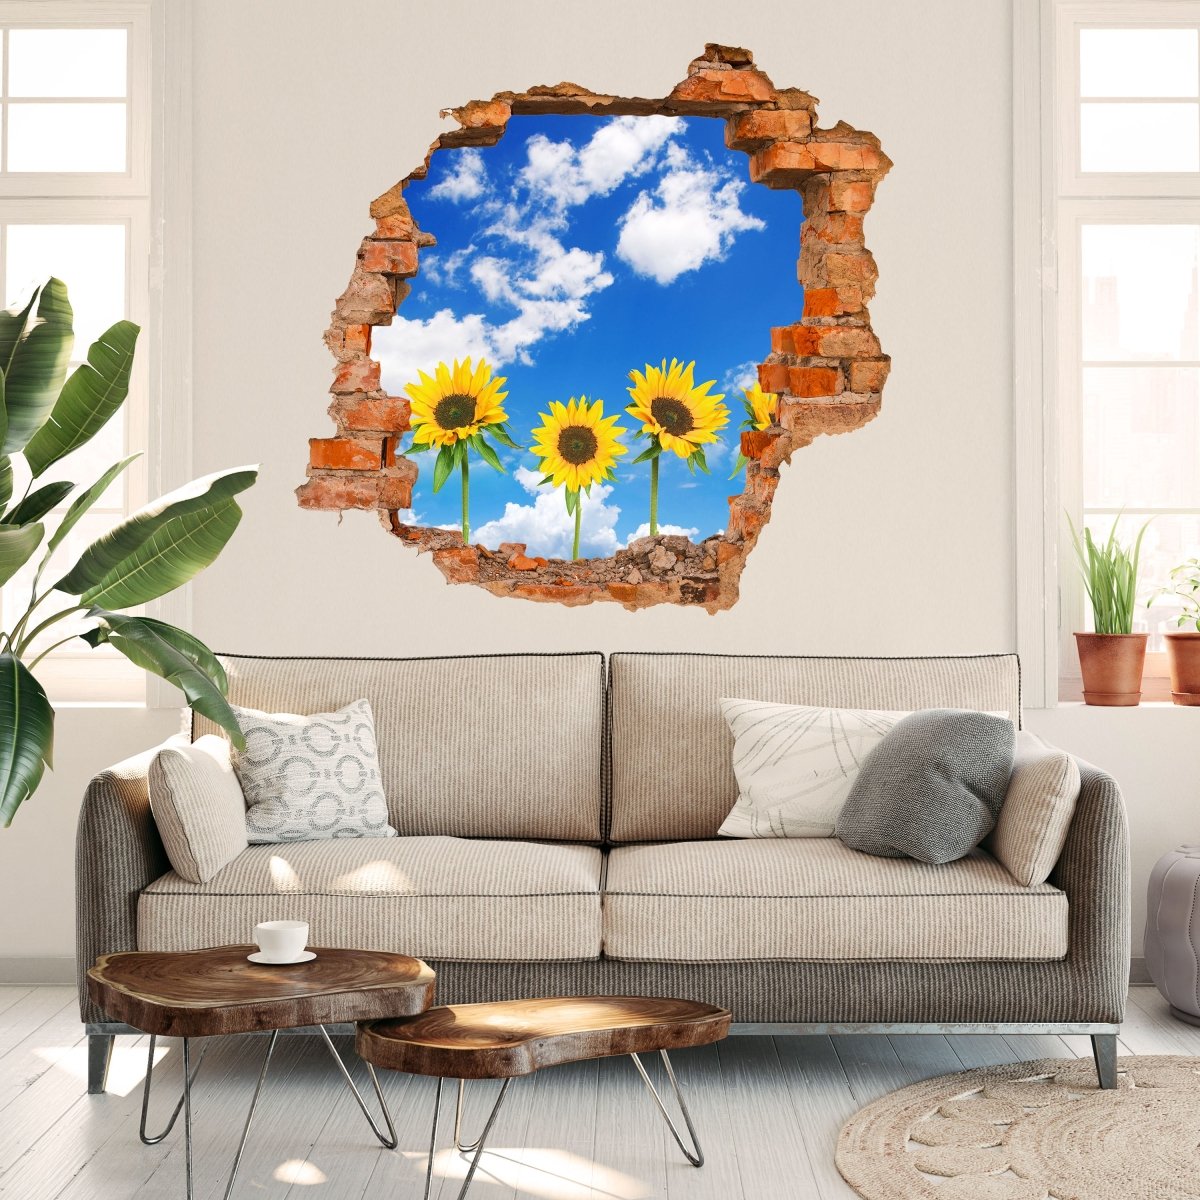 Sunflowers 3D wall sticker - Wall Decal M0705